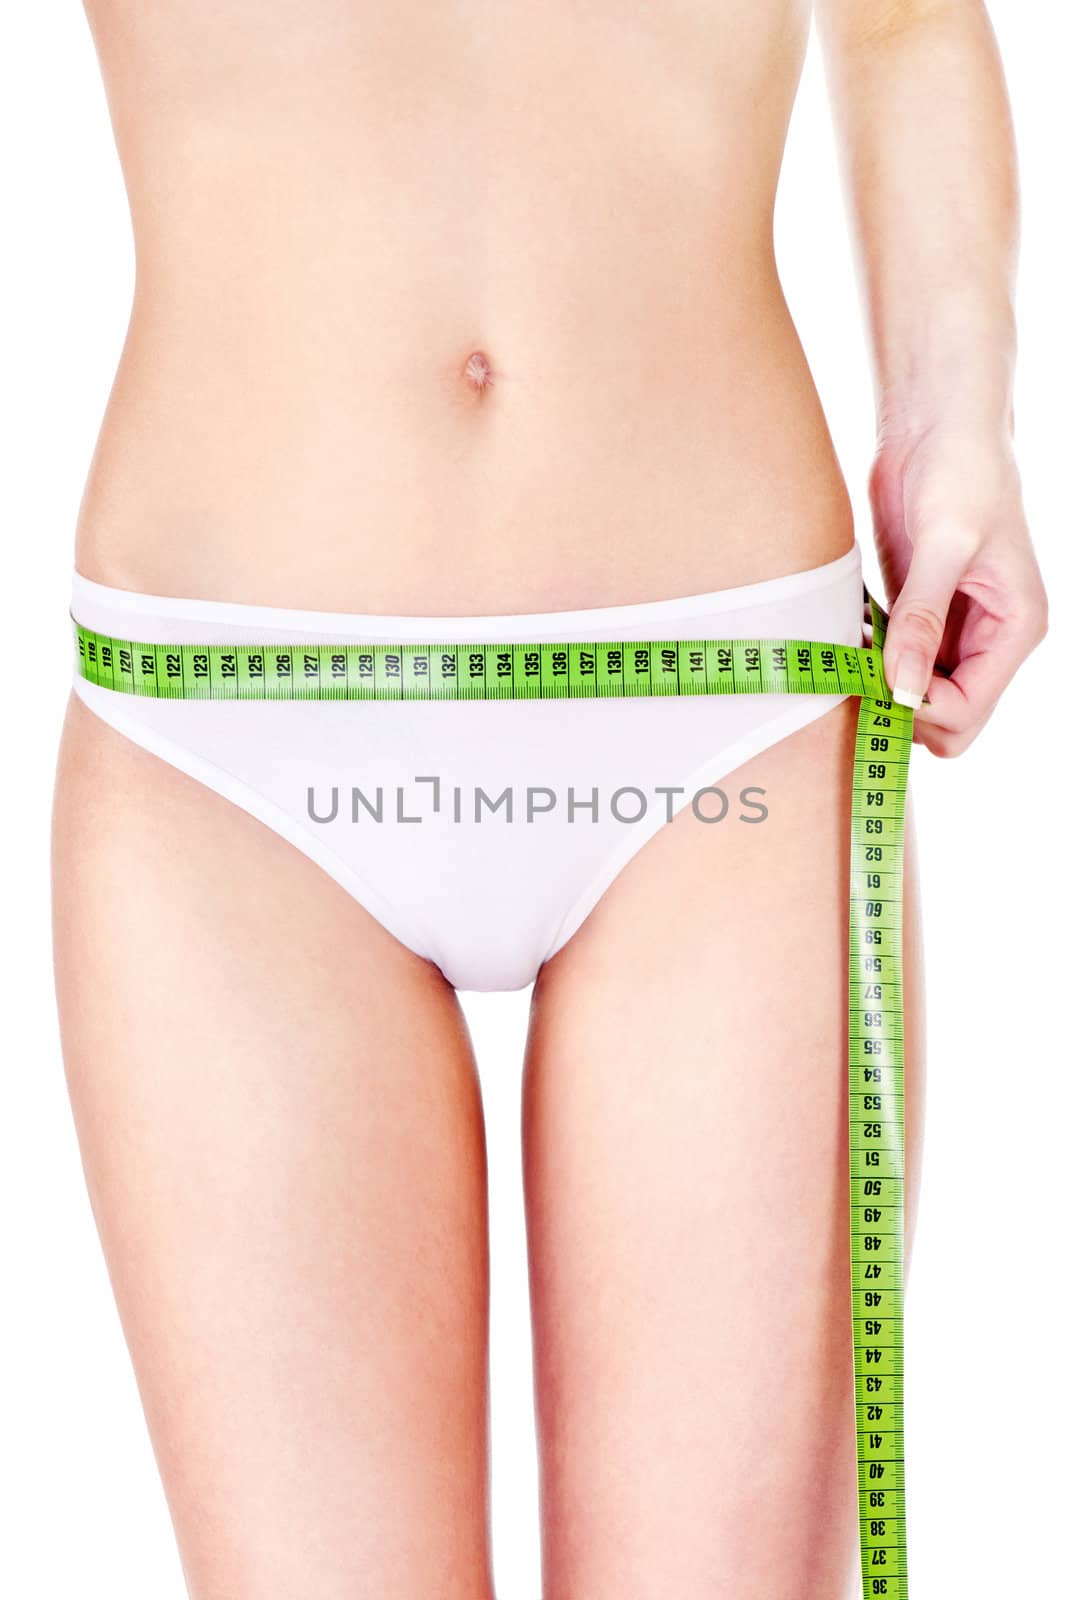 Measure tape around slim woman's hip by imarin